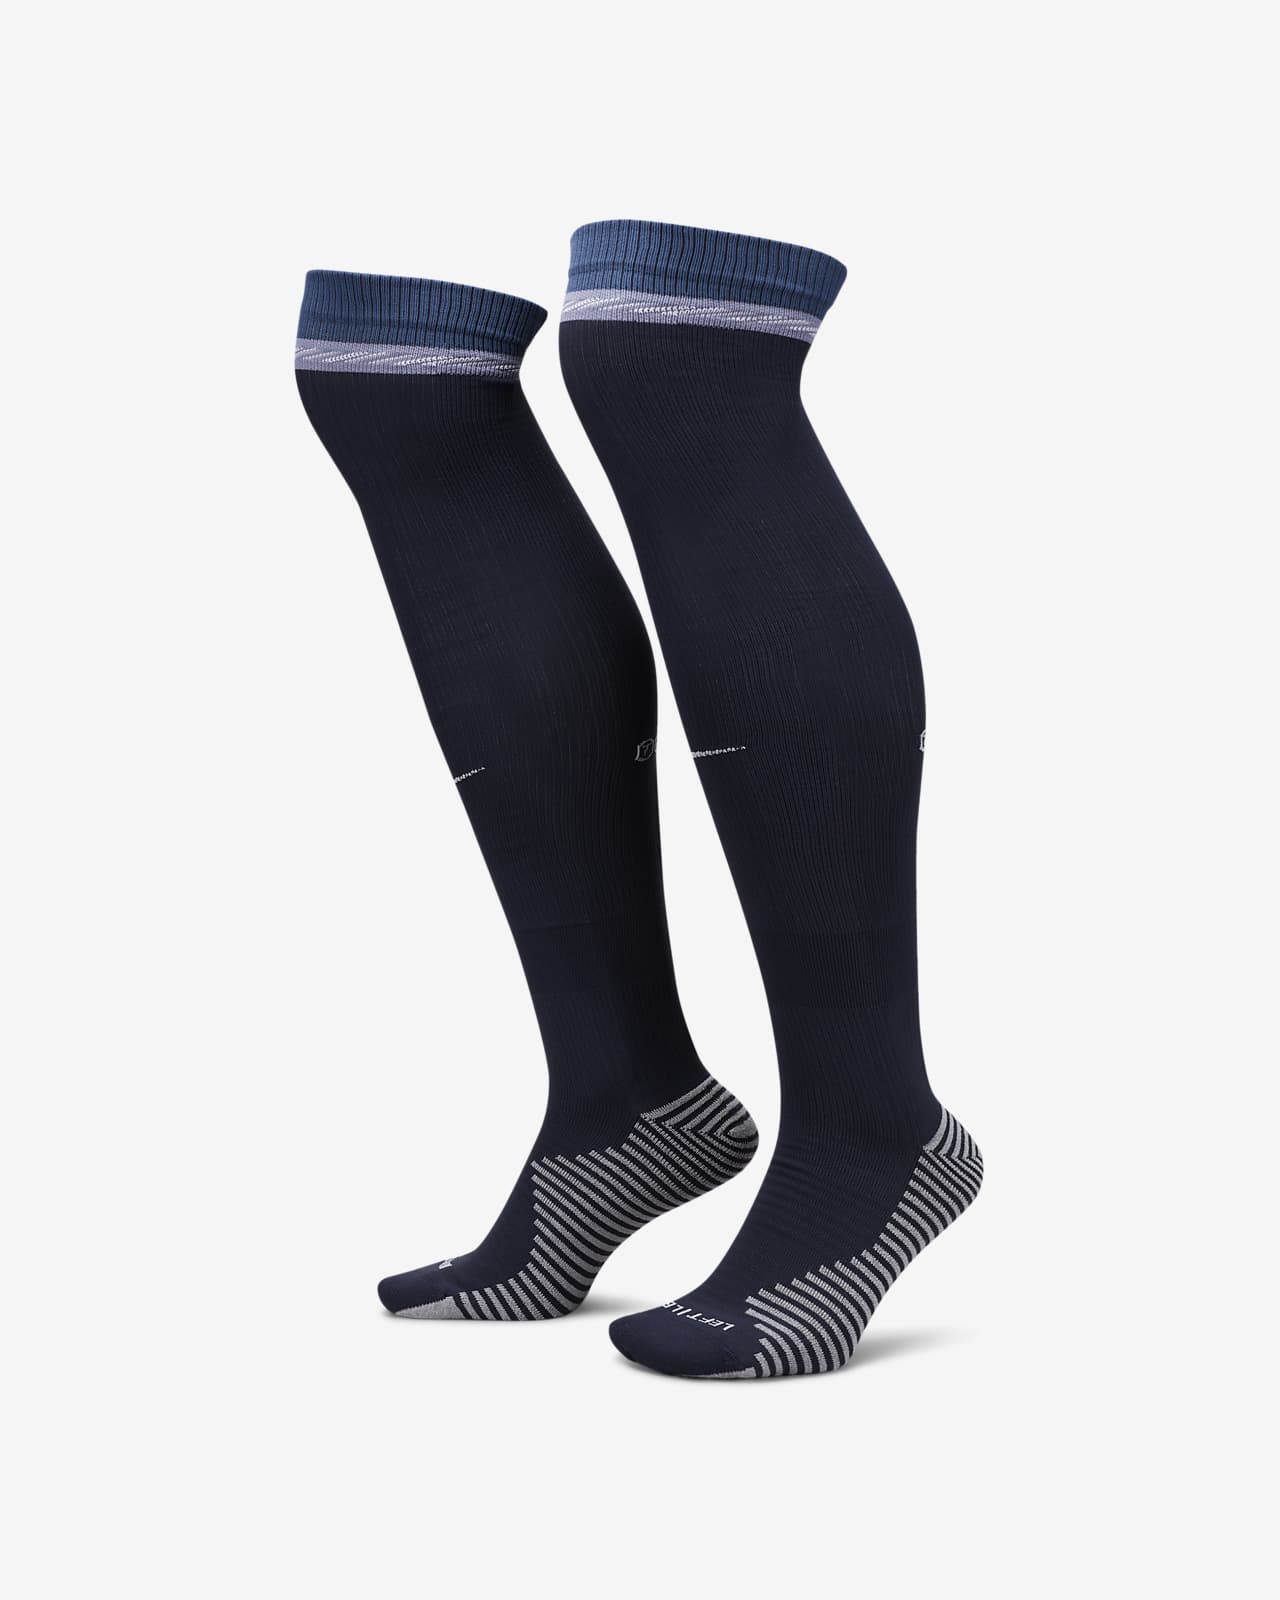 Ποδοσφαιρικές κάλτσες μέχρι το γόνατο Nike εκτός έδρας Τότεναμ Strike